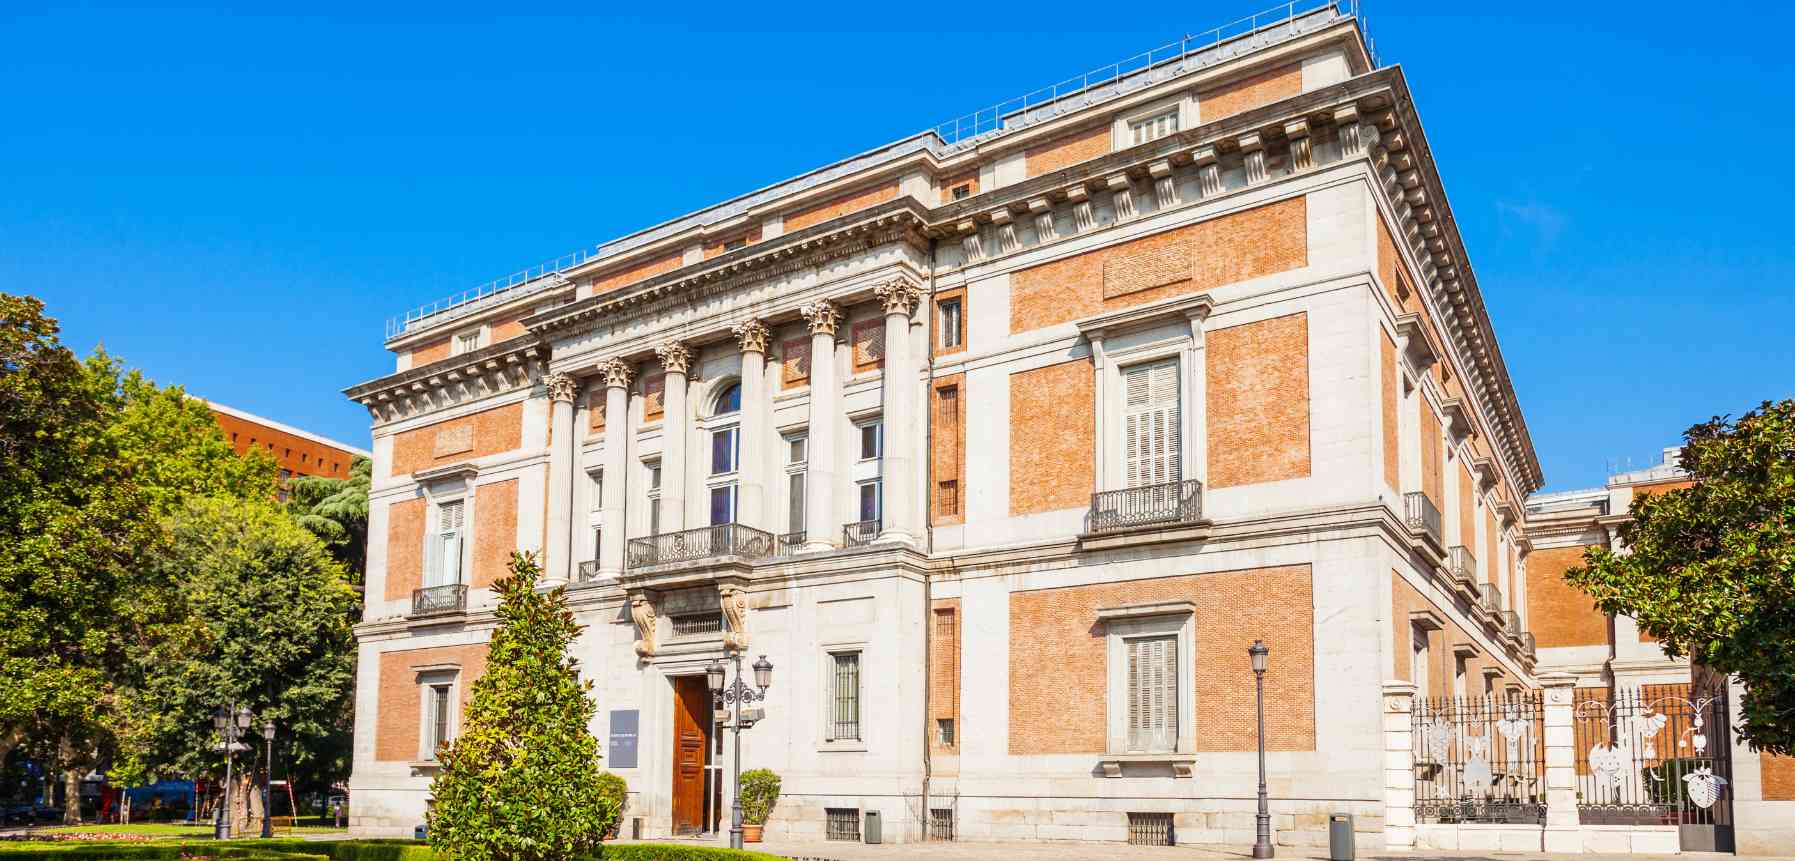 Explore the Prado Museum in Madrid